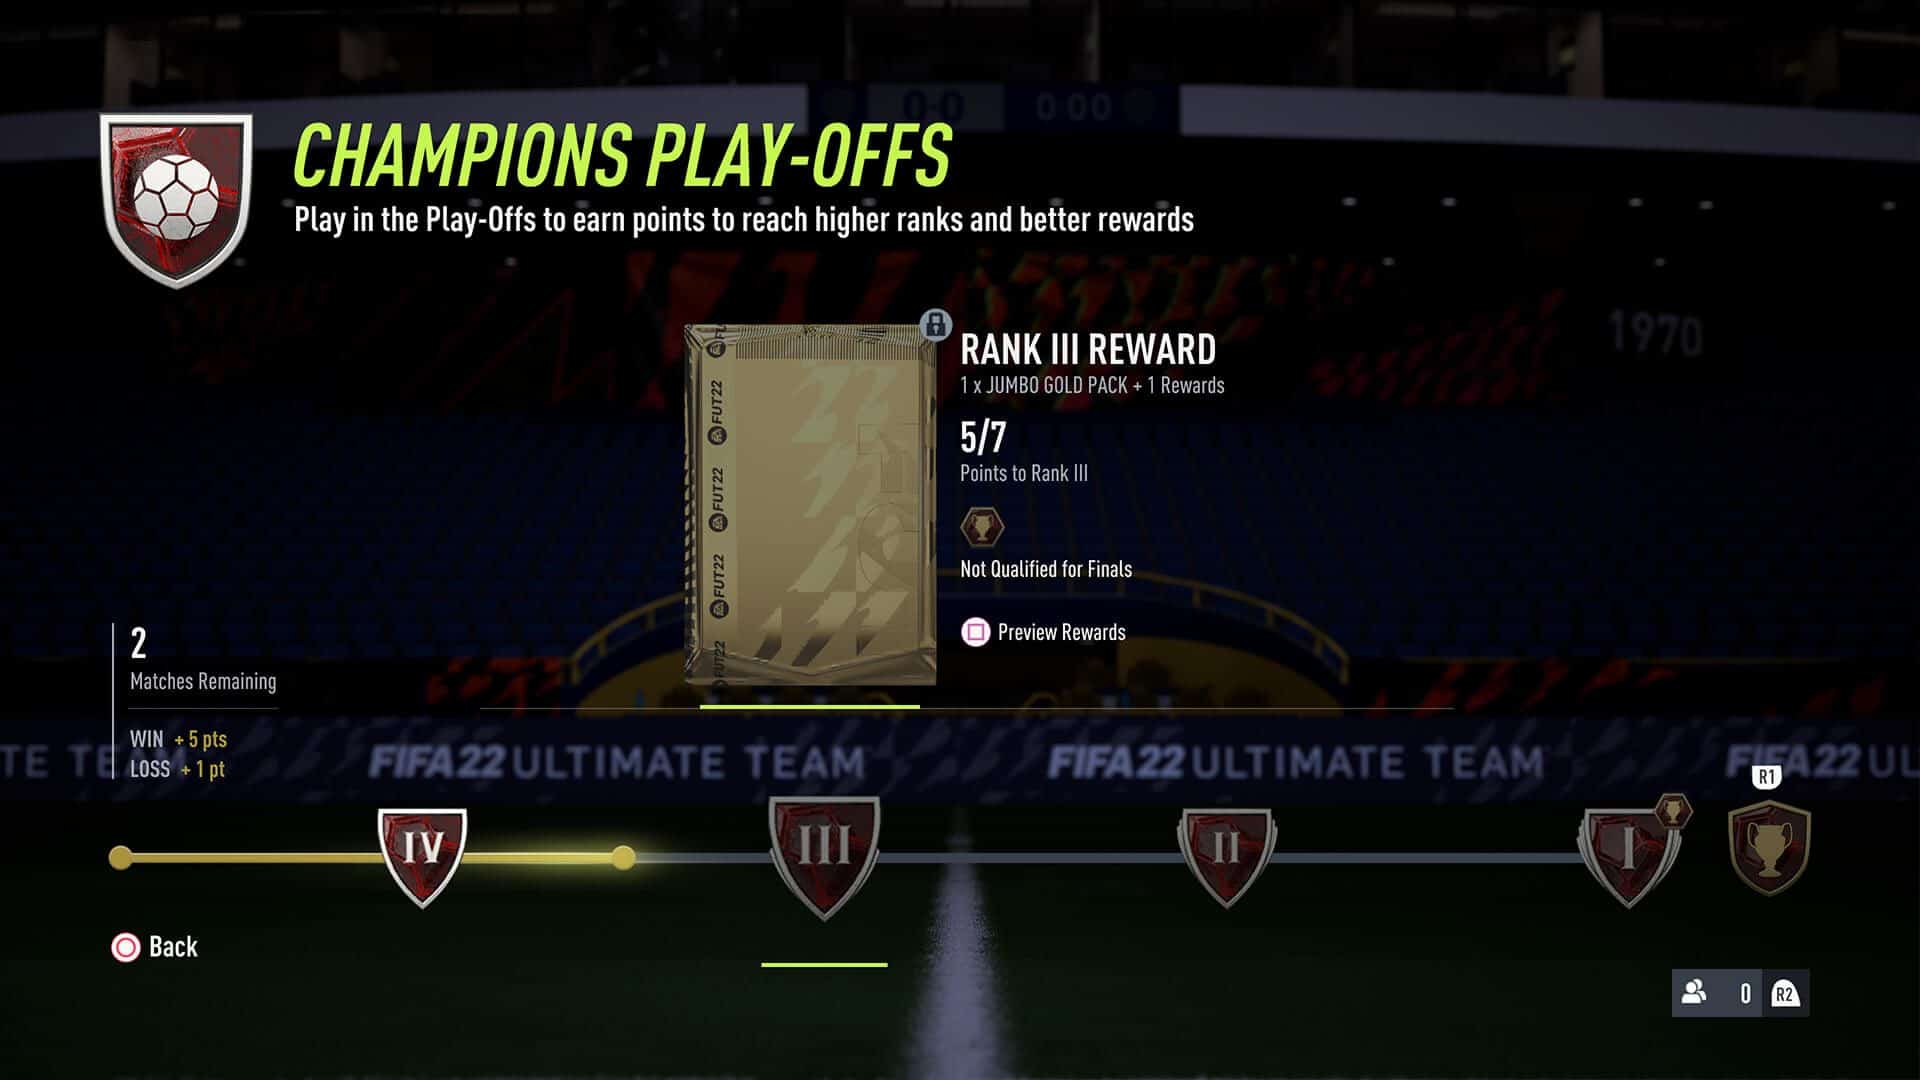 Пример вознаграждений в системе ранжирования FUT Champions Play-Offs. Источник: EA Sports)